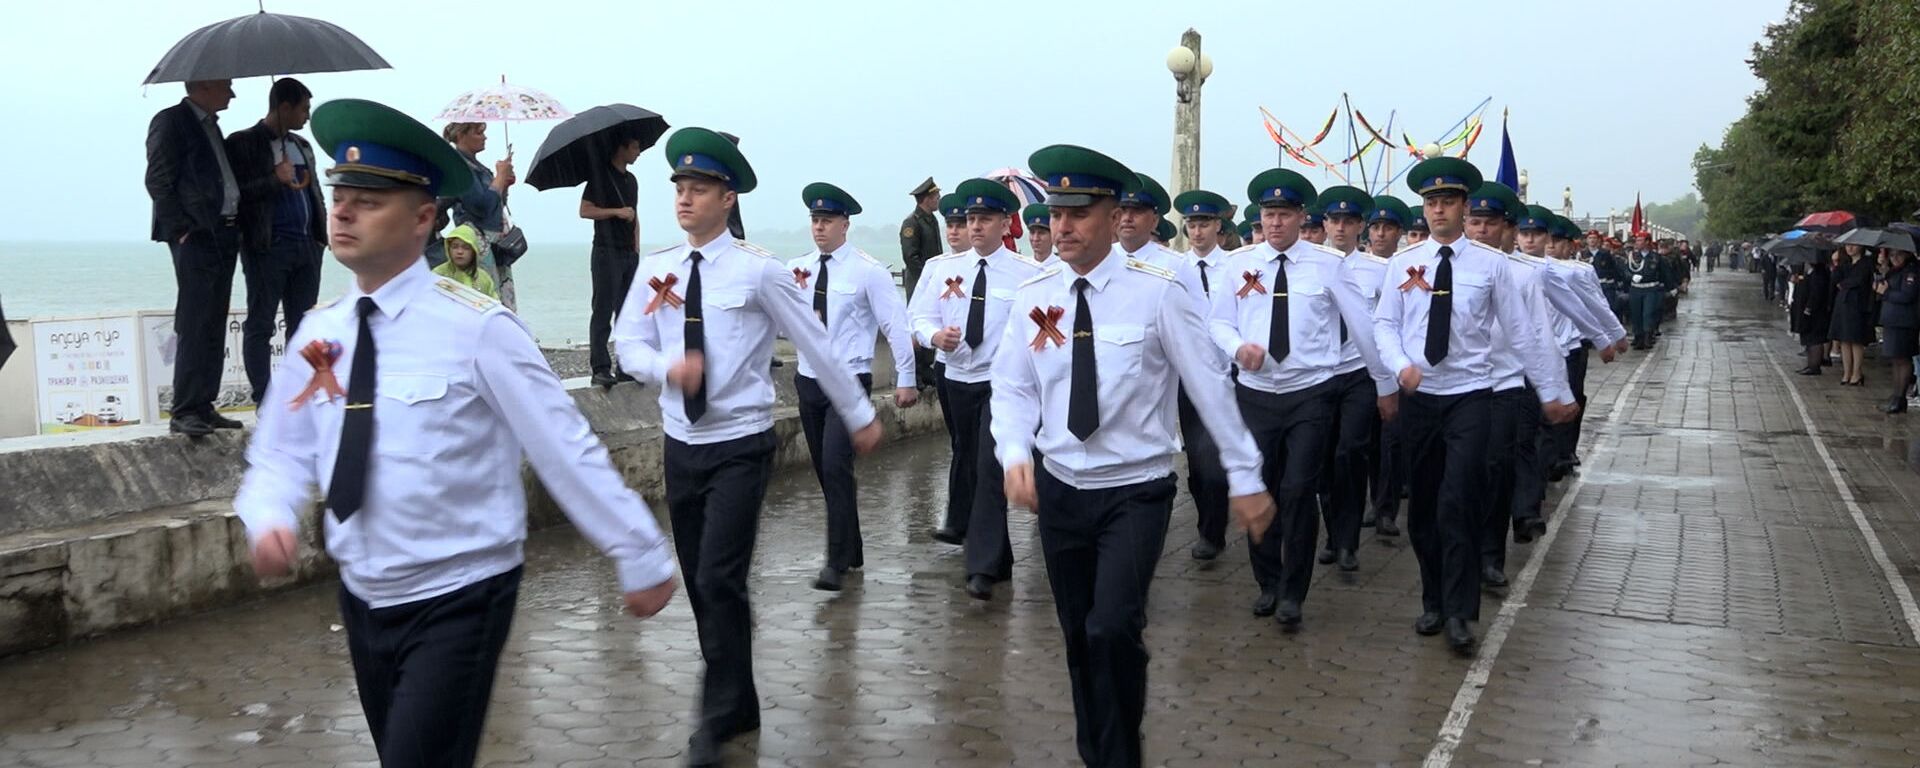 Бессмертный полк и парад под дождем: как в Абхазии отметили День Победы - Sputnik Абхазия, 1920, 09.05.2021